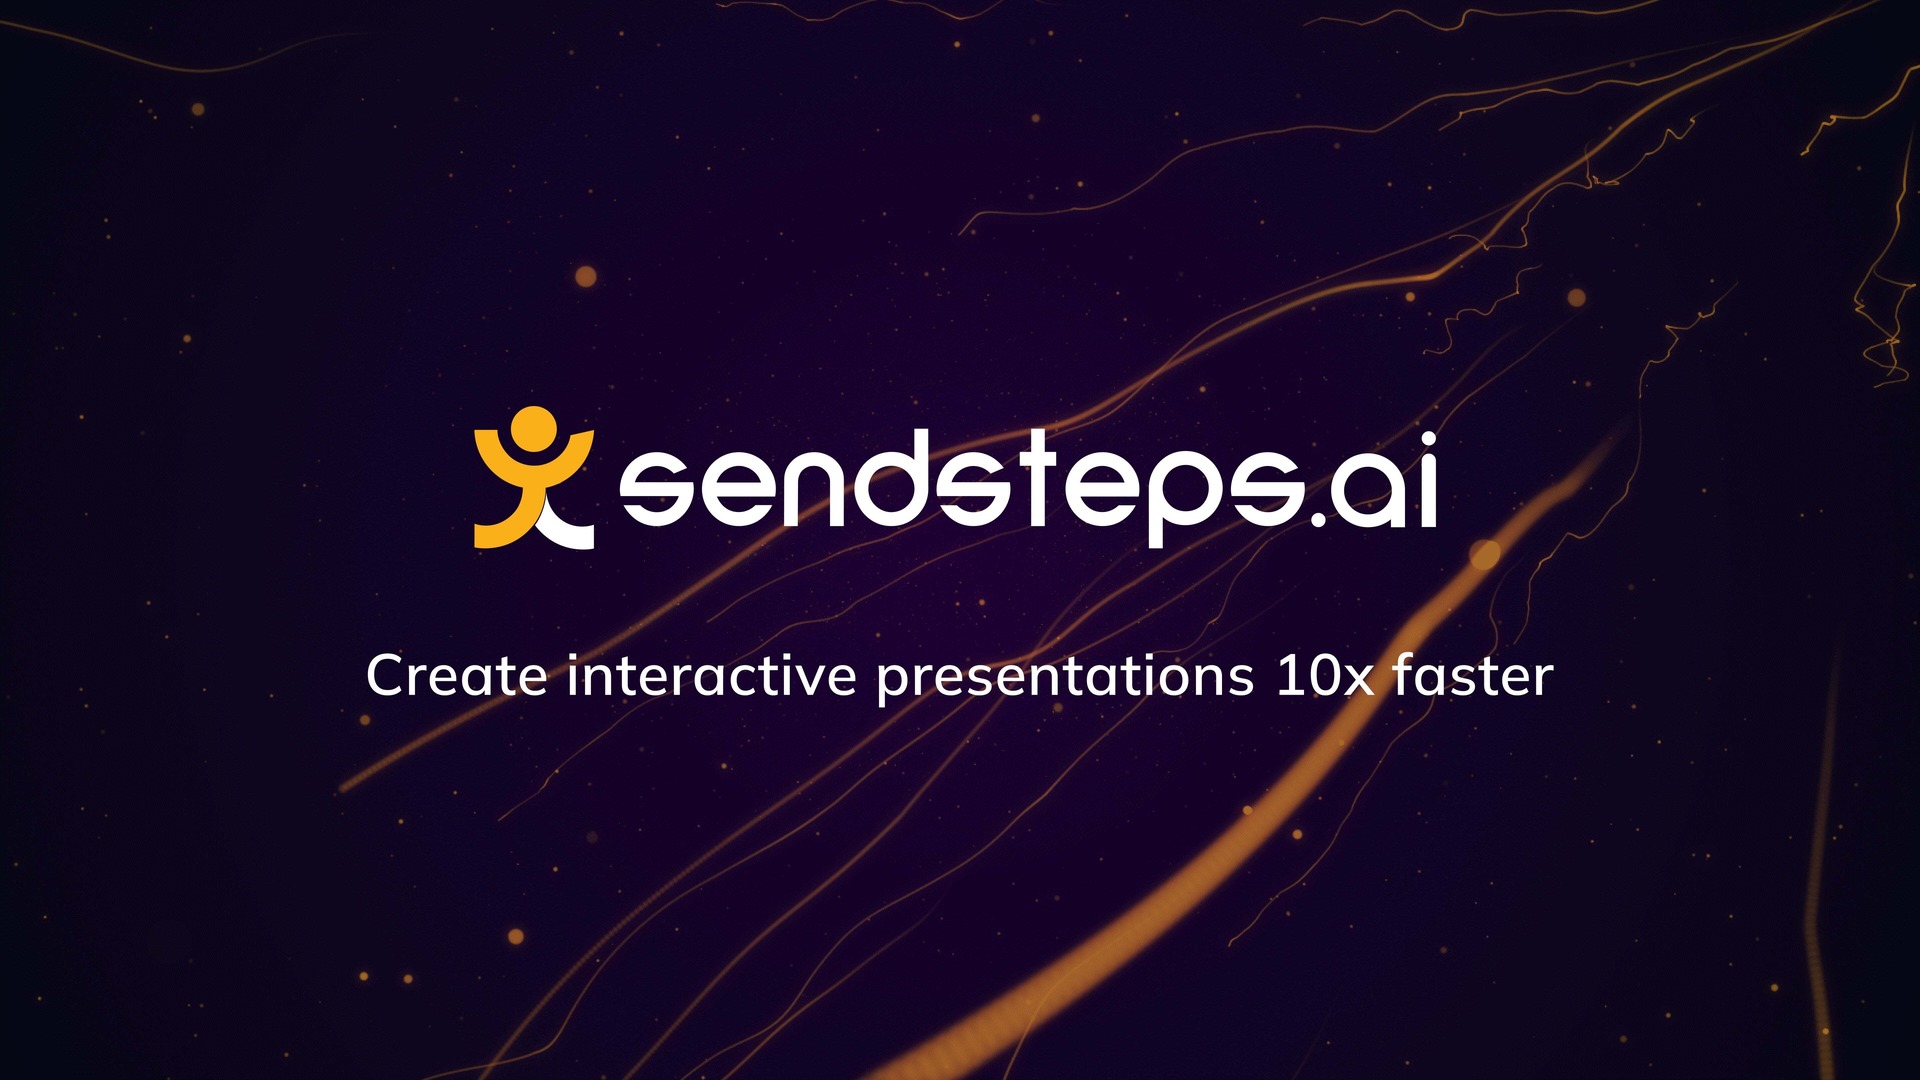 SendSteps.ai - Ein Tool zum Erstellen interaktiver Präsentationen